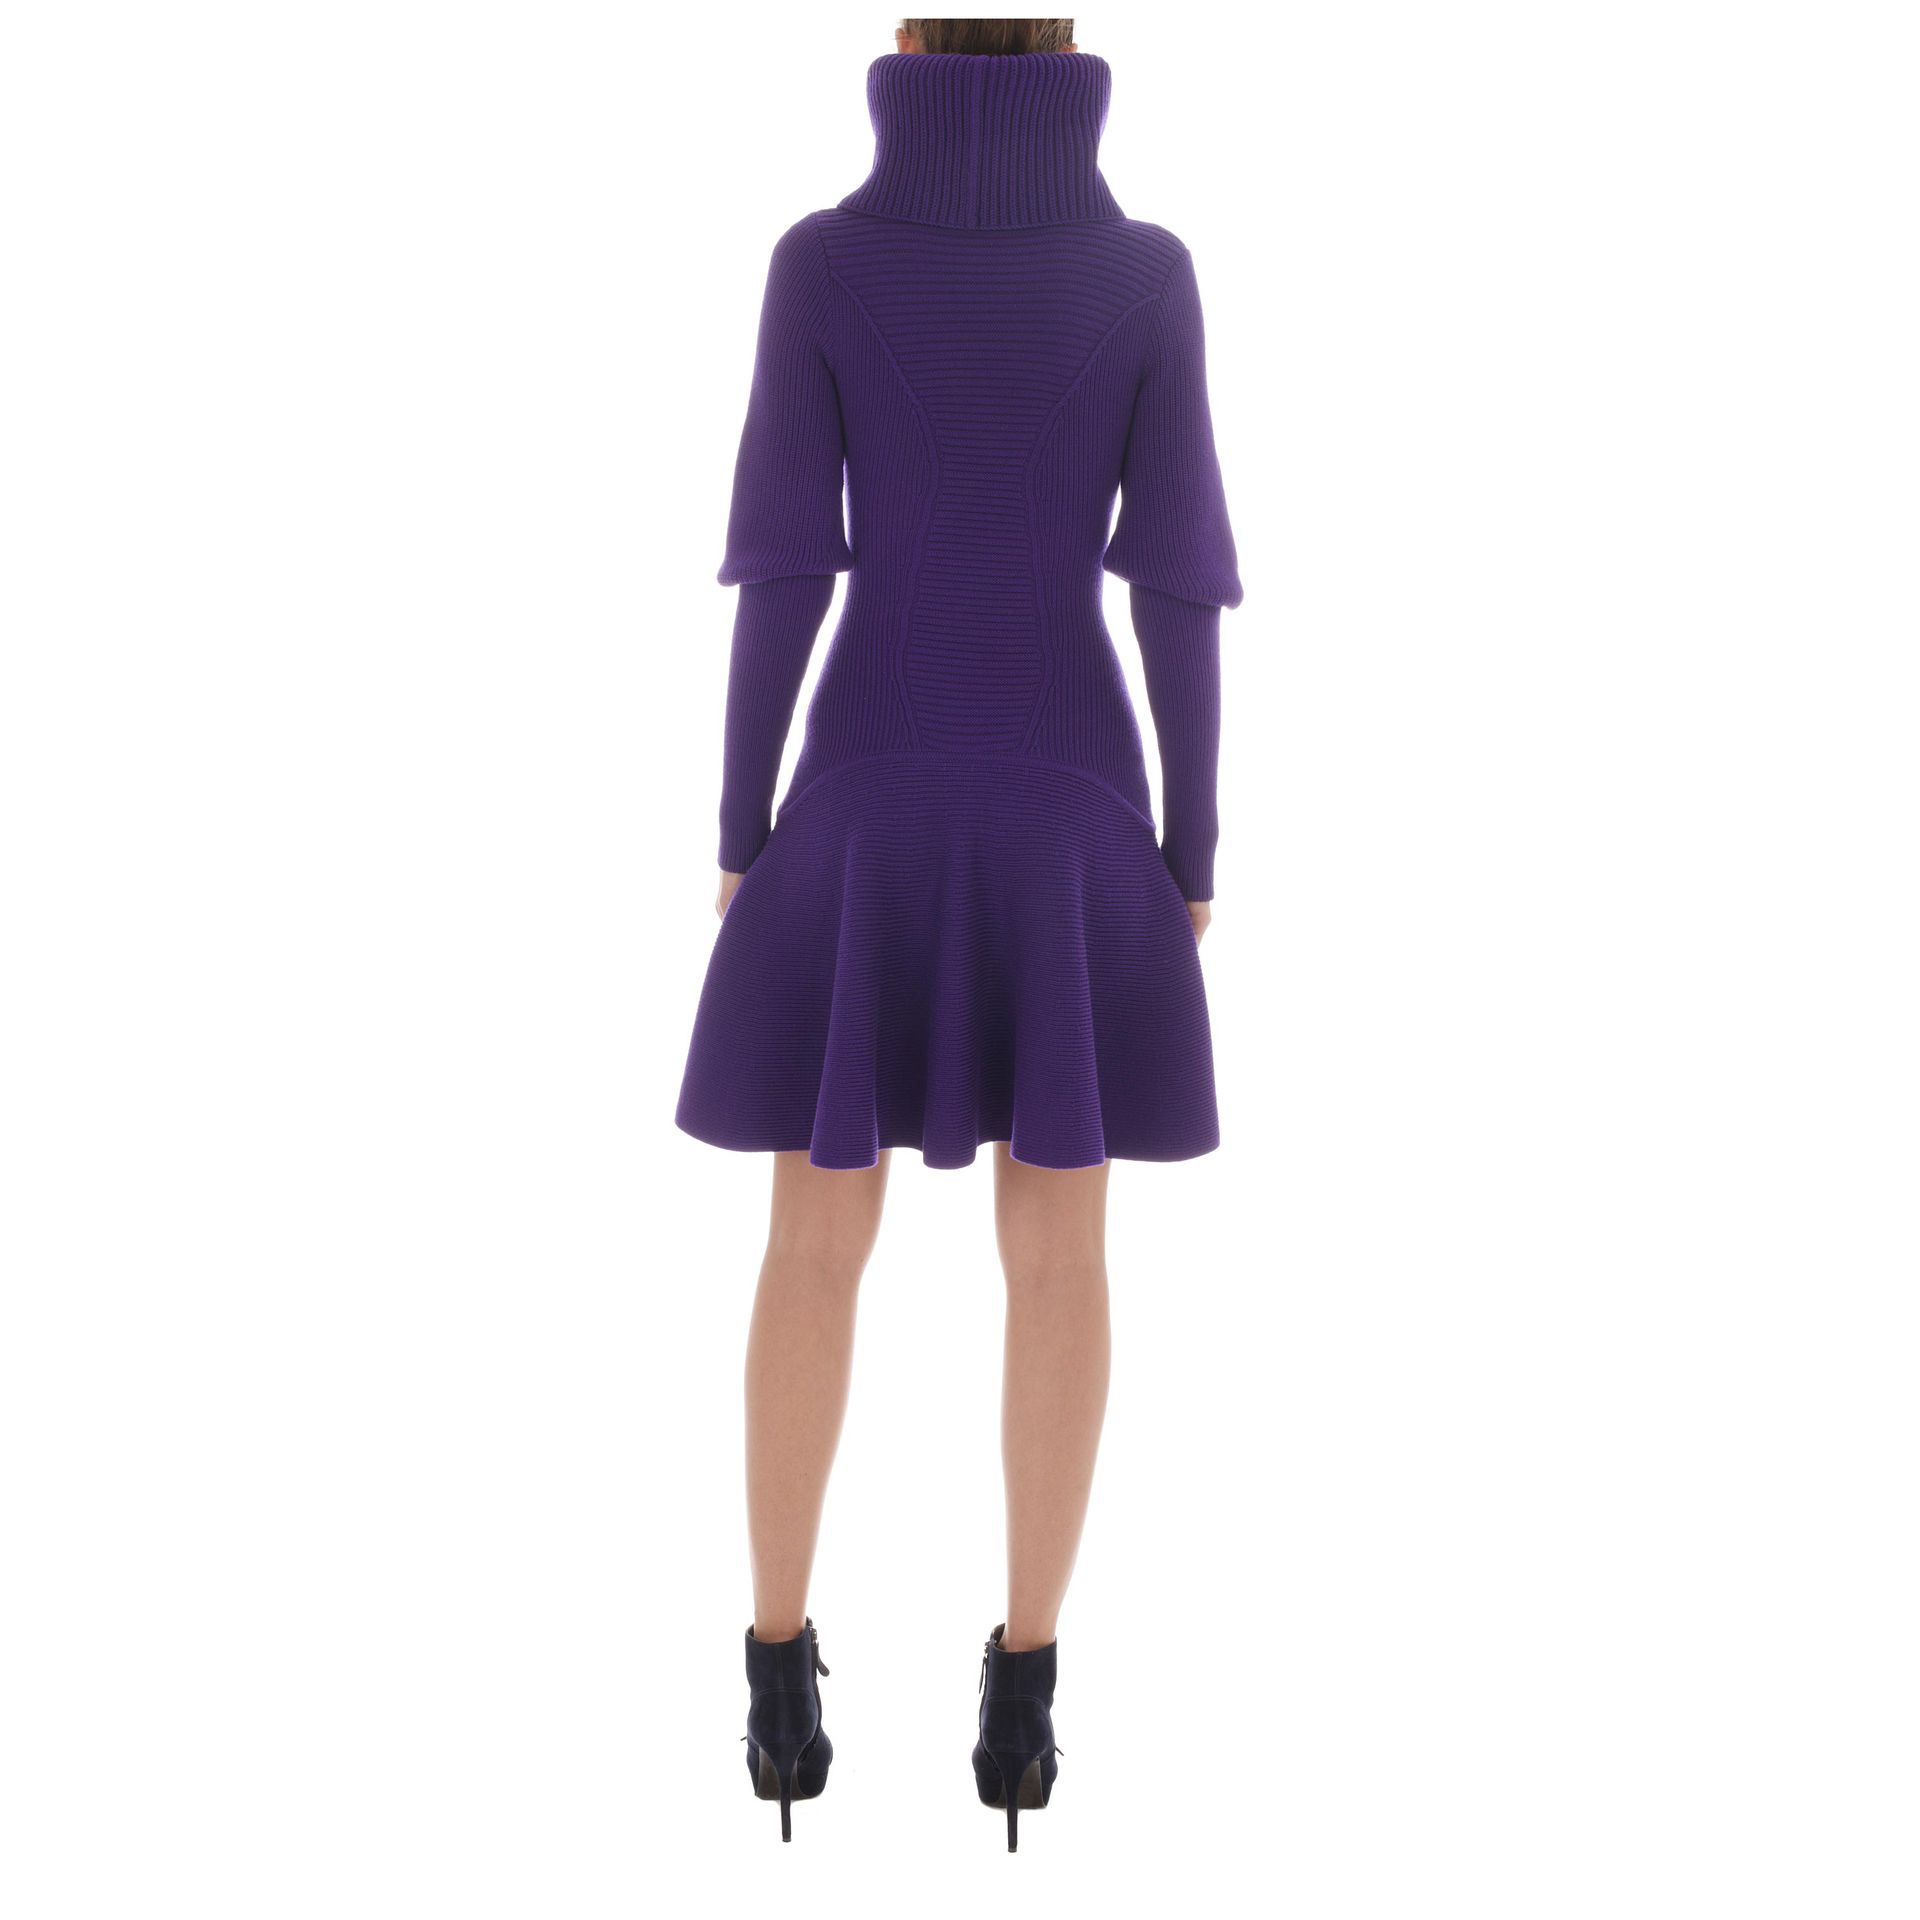 Lyst - Alexander mcqueen Funnel Neck Knit Dress in Purple